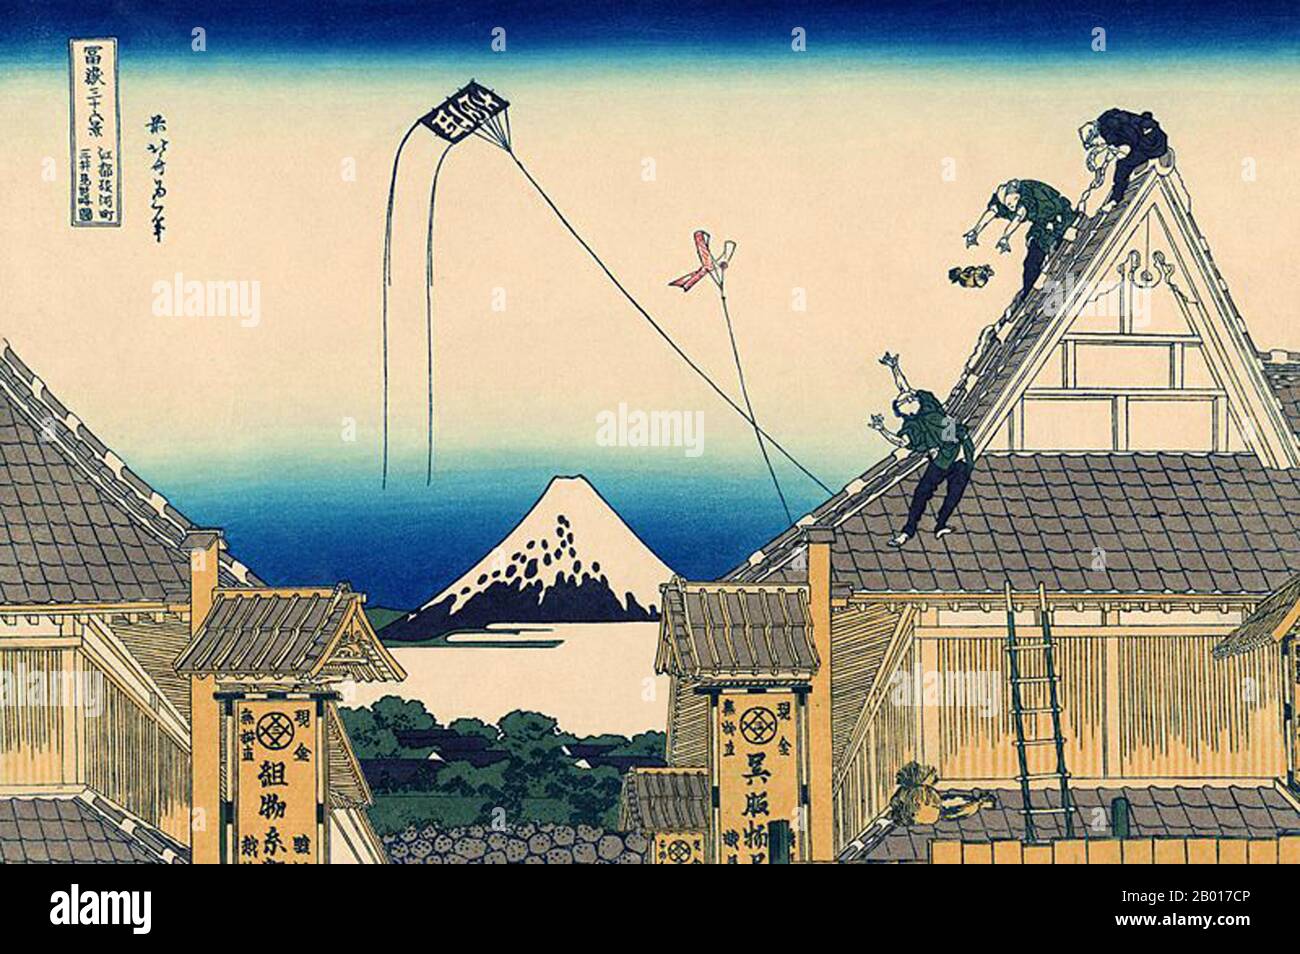 Japan: ‘The Mitsui Shop in Suruga'. Ukiyo-e Holzschnitt aus der Serie ‘Thirty-Six views of Mount Fuji’ von Katsushika Hokusai (31. Oktober 1760 - 10. Mai 1849), 1830. ‘Thirty-Six Views of Mount Fuji’ ist eine Serie von Holzschnitten der japanischen Künstlerin Katsushika Hokusai, die „Sukiyo-e“ ‘. Die Serie zeigt den Fuji in unterschiedlichen Jahreszeiten und Wetterbedingungen an verschiedenen Orten und Entfernungen. Es besteht tatsächlich aus 46 Drucken, die zwischen 1826 und 1833 entstanden sind. Die ersten 36 wurden in die Originalpublikation aufgenommen, und aufgrund ihrer Popularität wurden nach der Originalpublikation 10 weitere hinzugefügt. Stockfoto